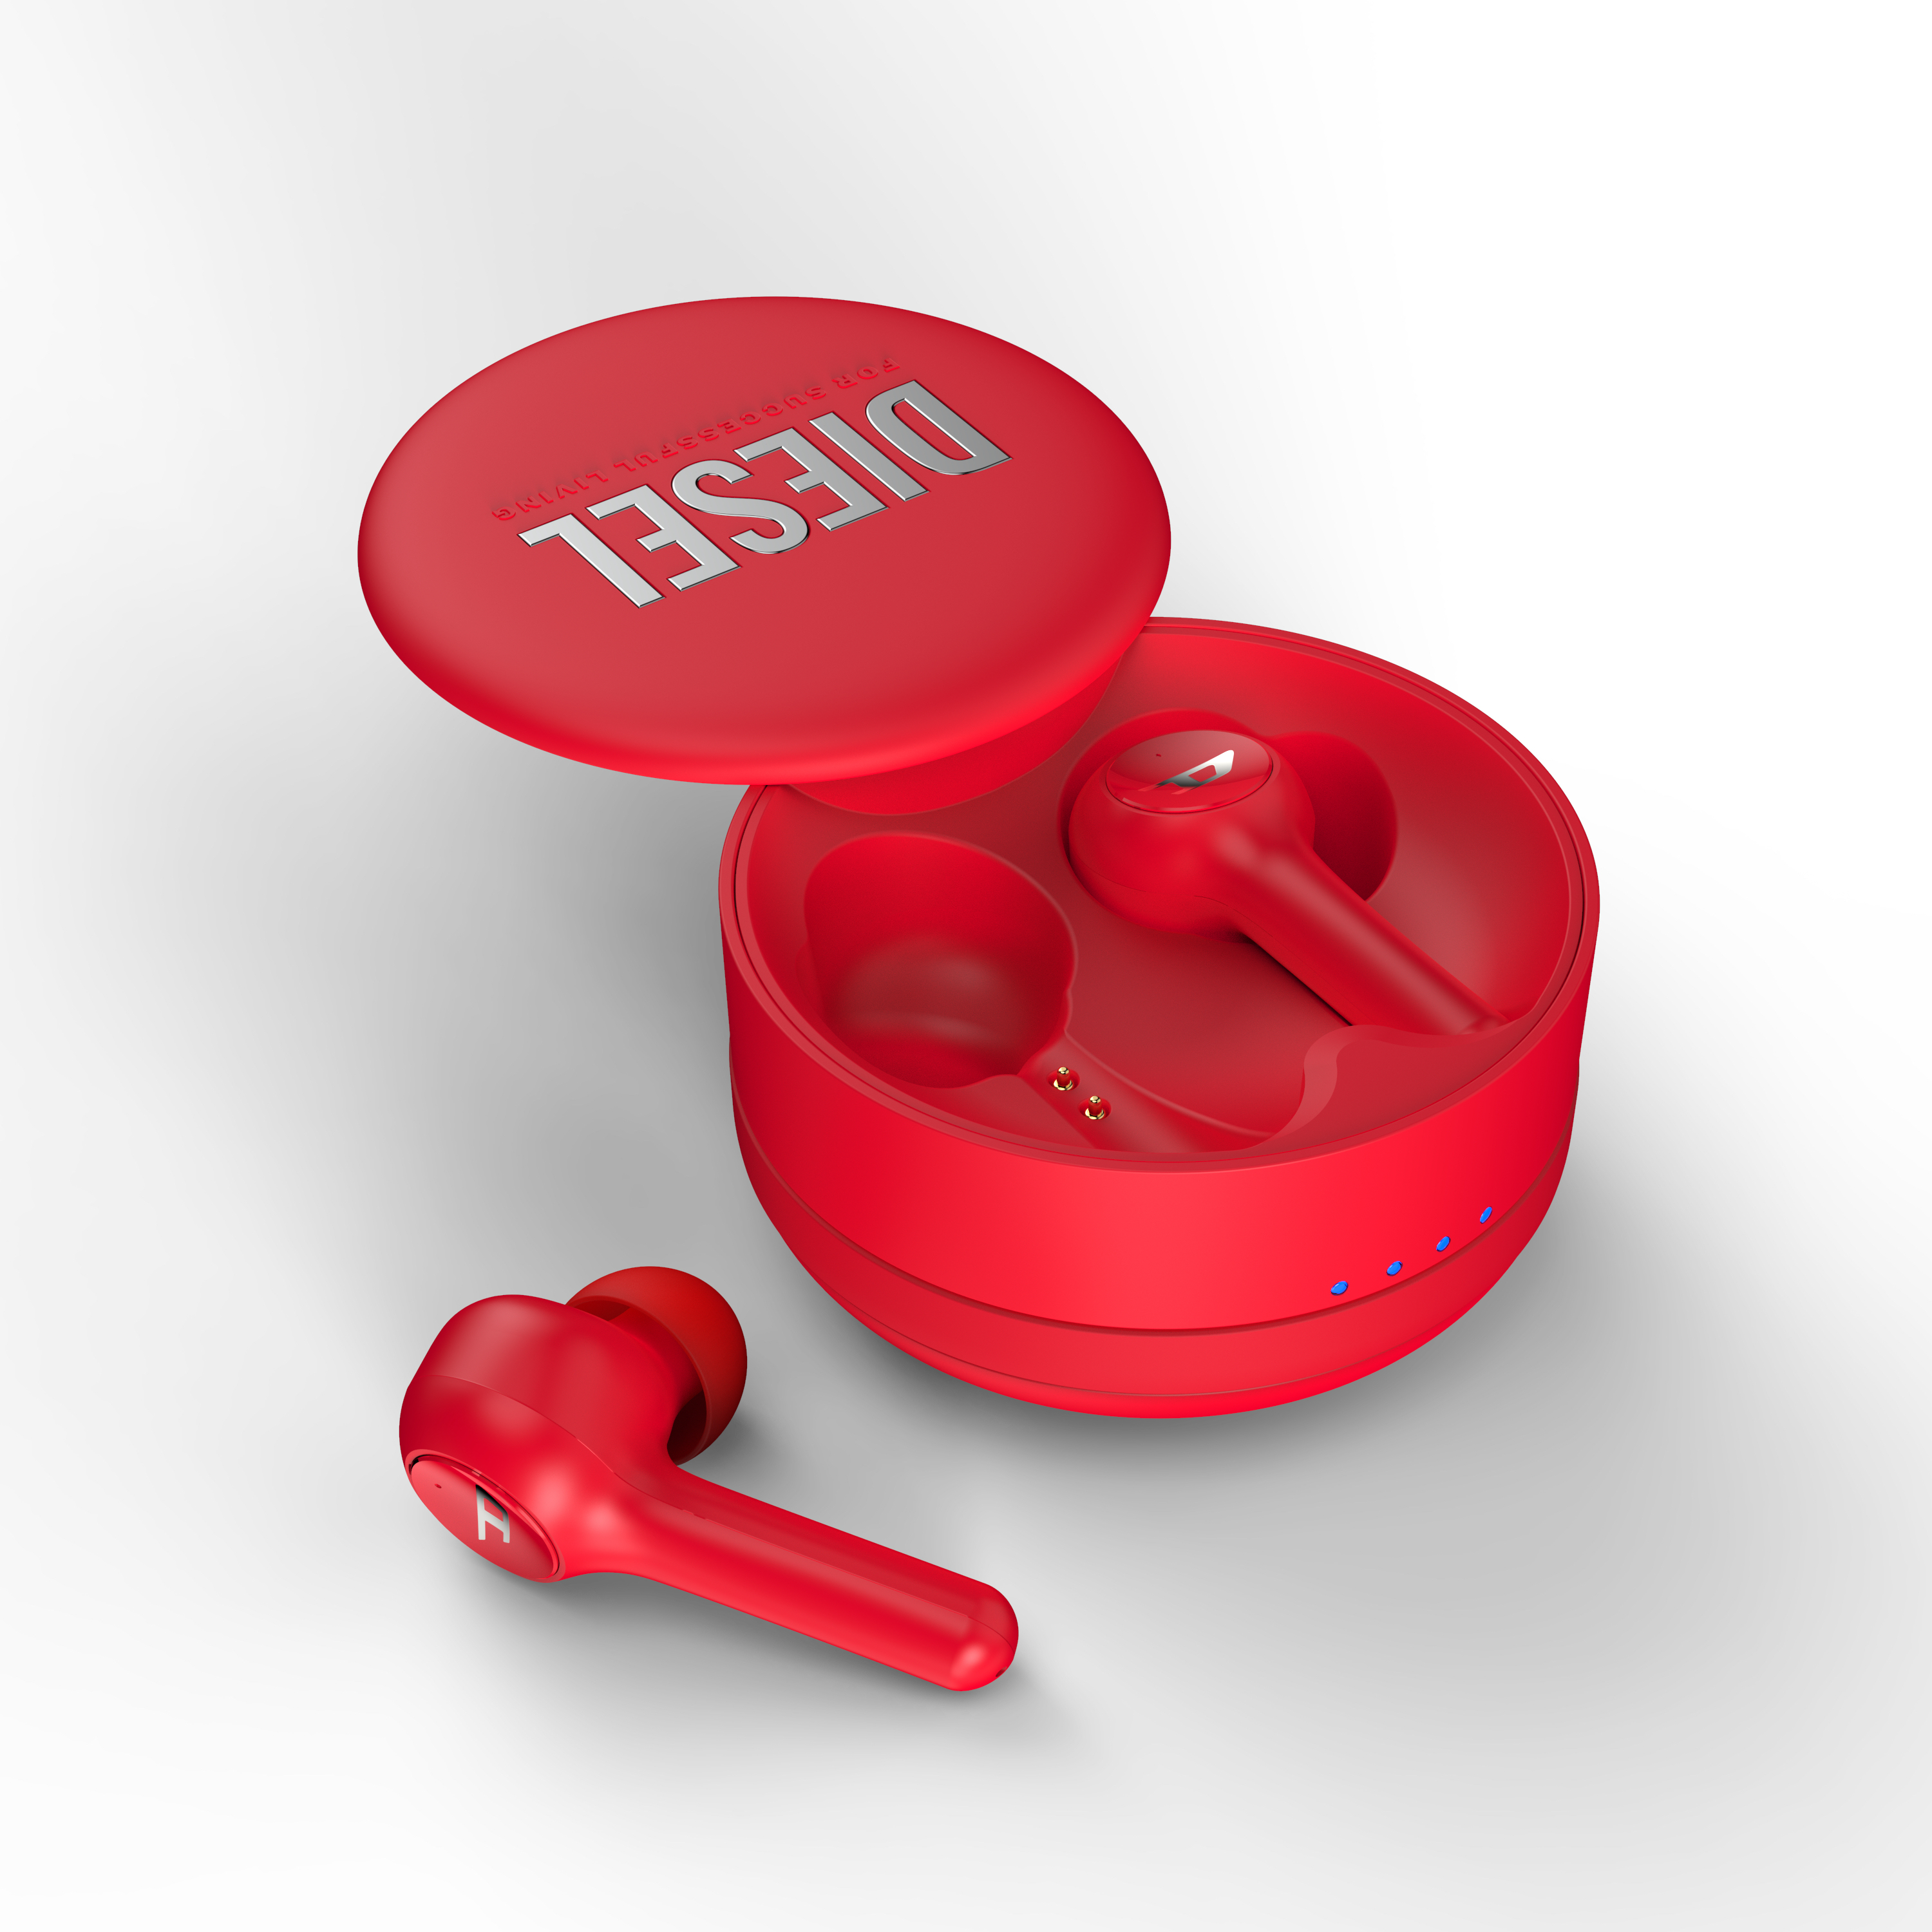 Cuffia con microfono DIESEL 45476 cuffia e auricolare True Wireless Stereo (TWS) In-ear Musica Chiamate Bluetooth Rosso [45476]